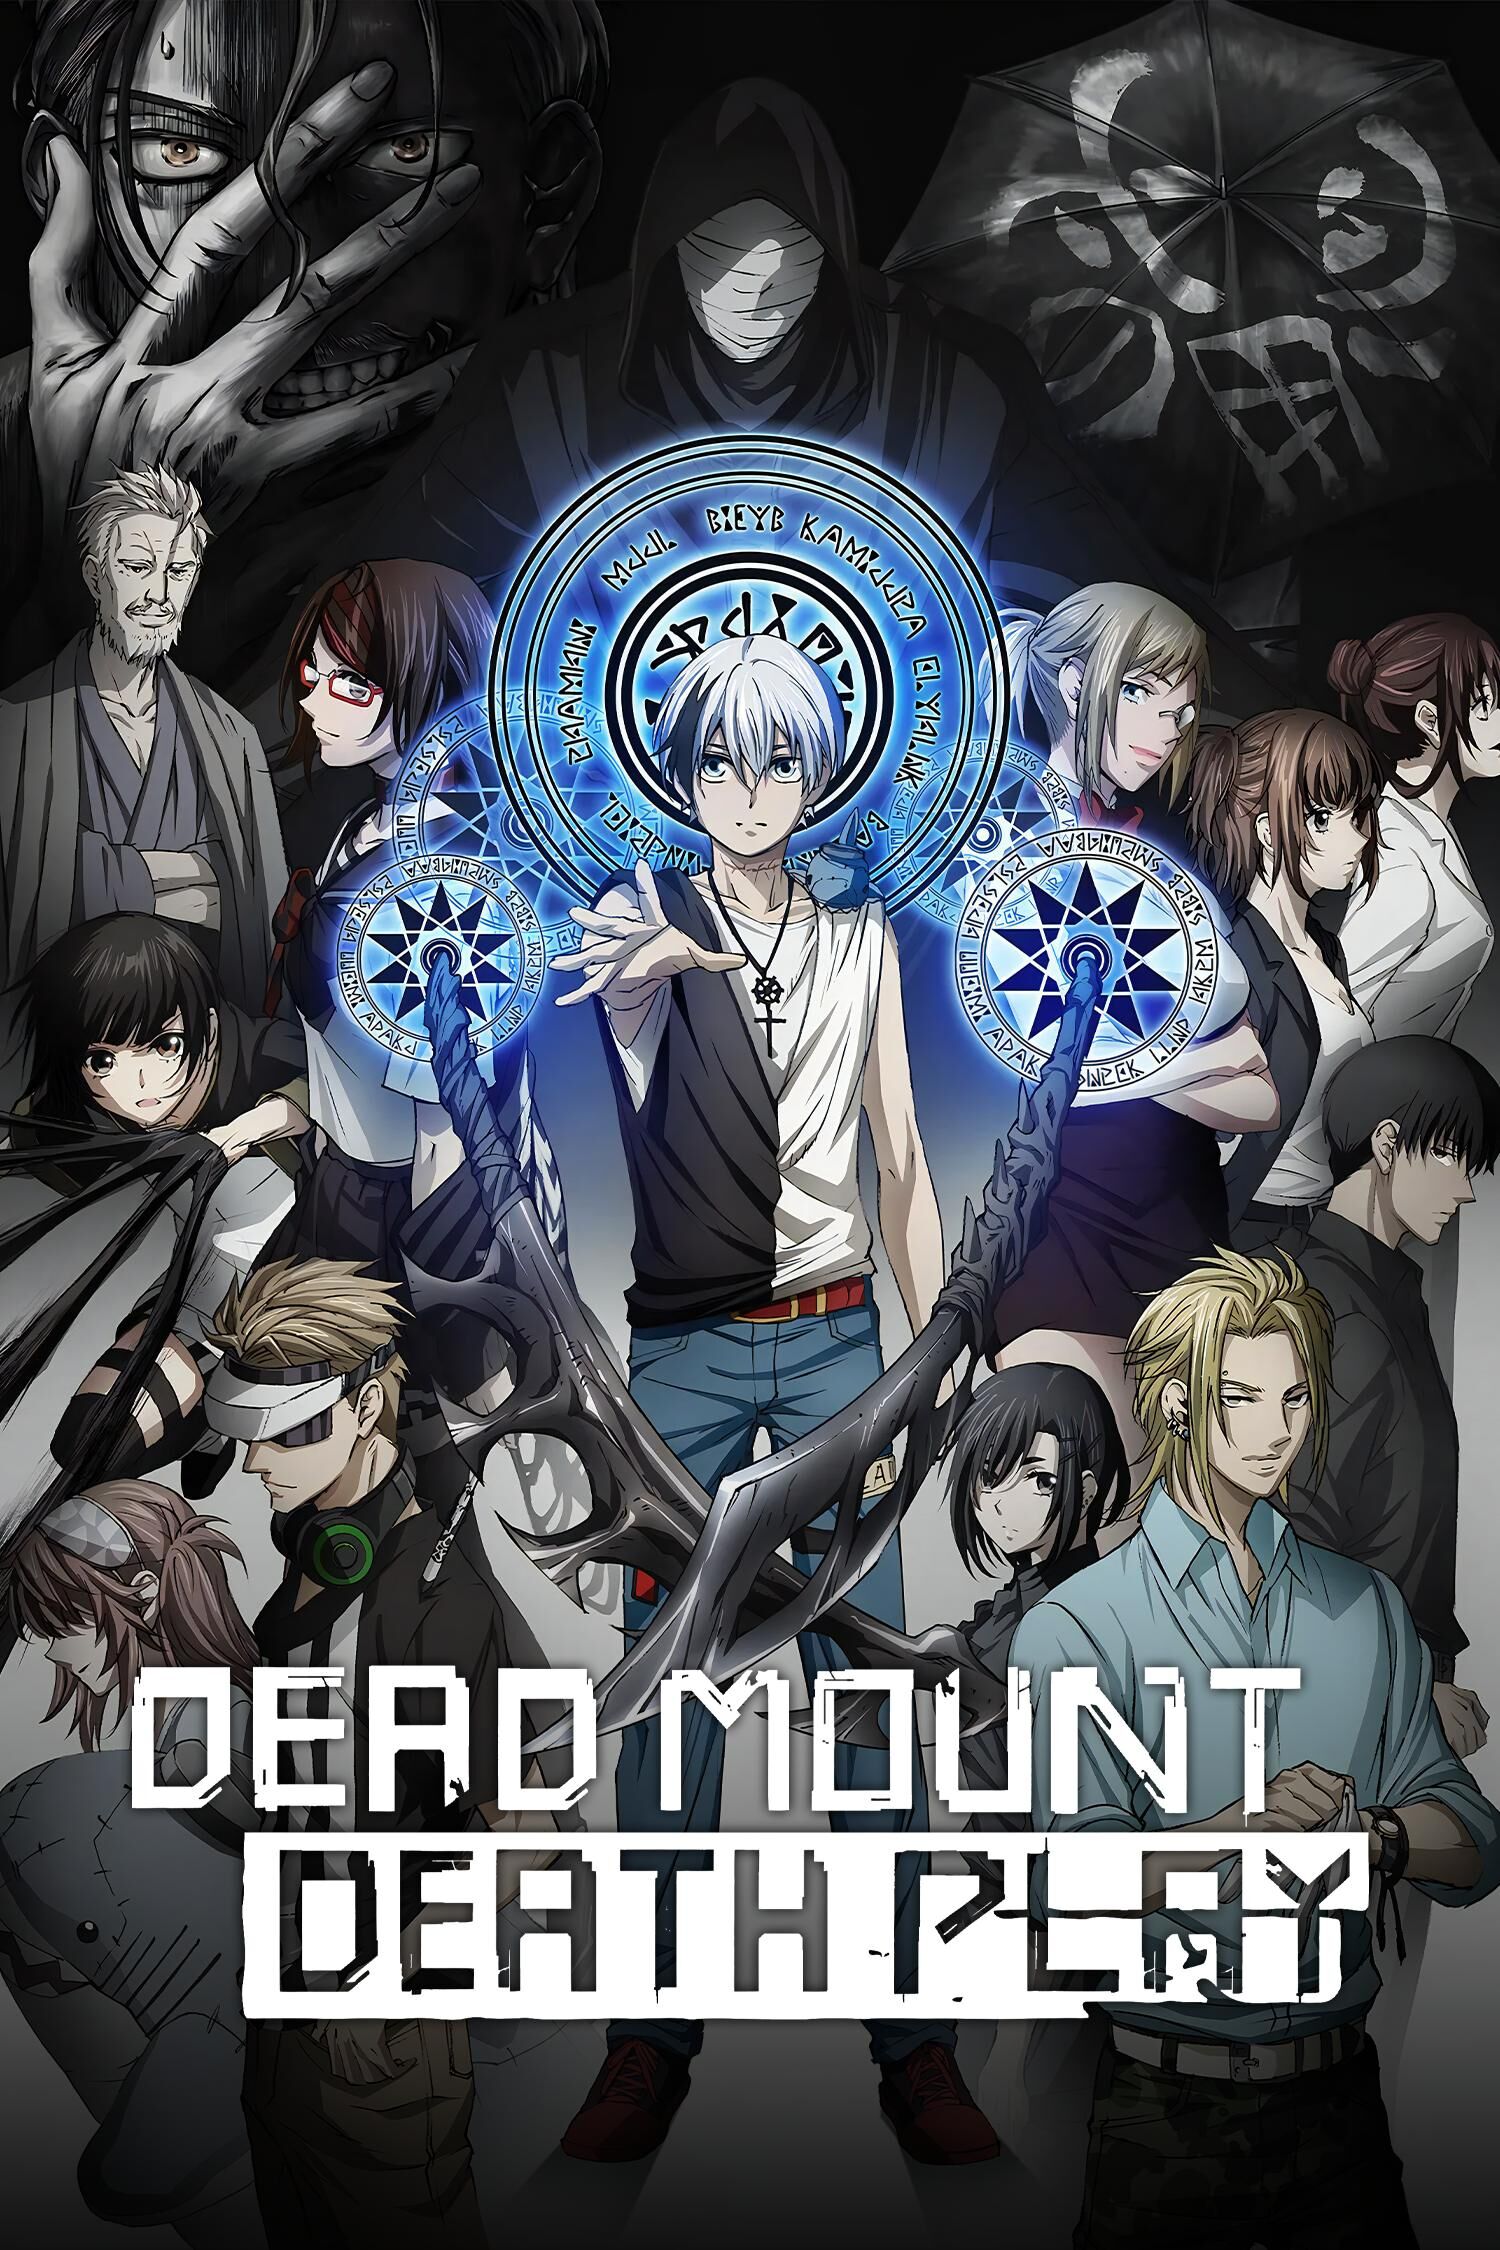 Kuon Higuro, Dead Mount Death Play Wiki